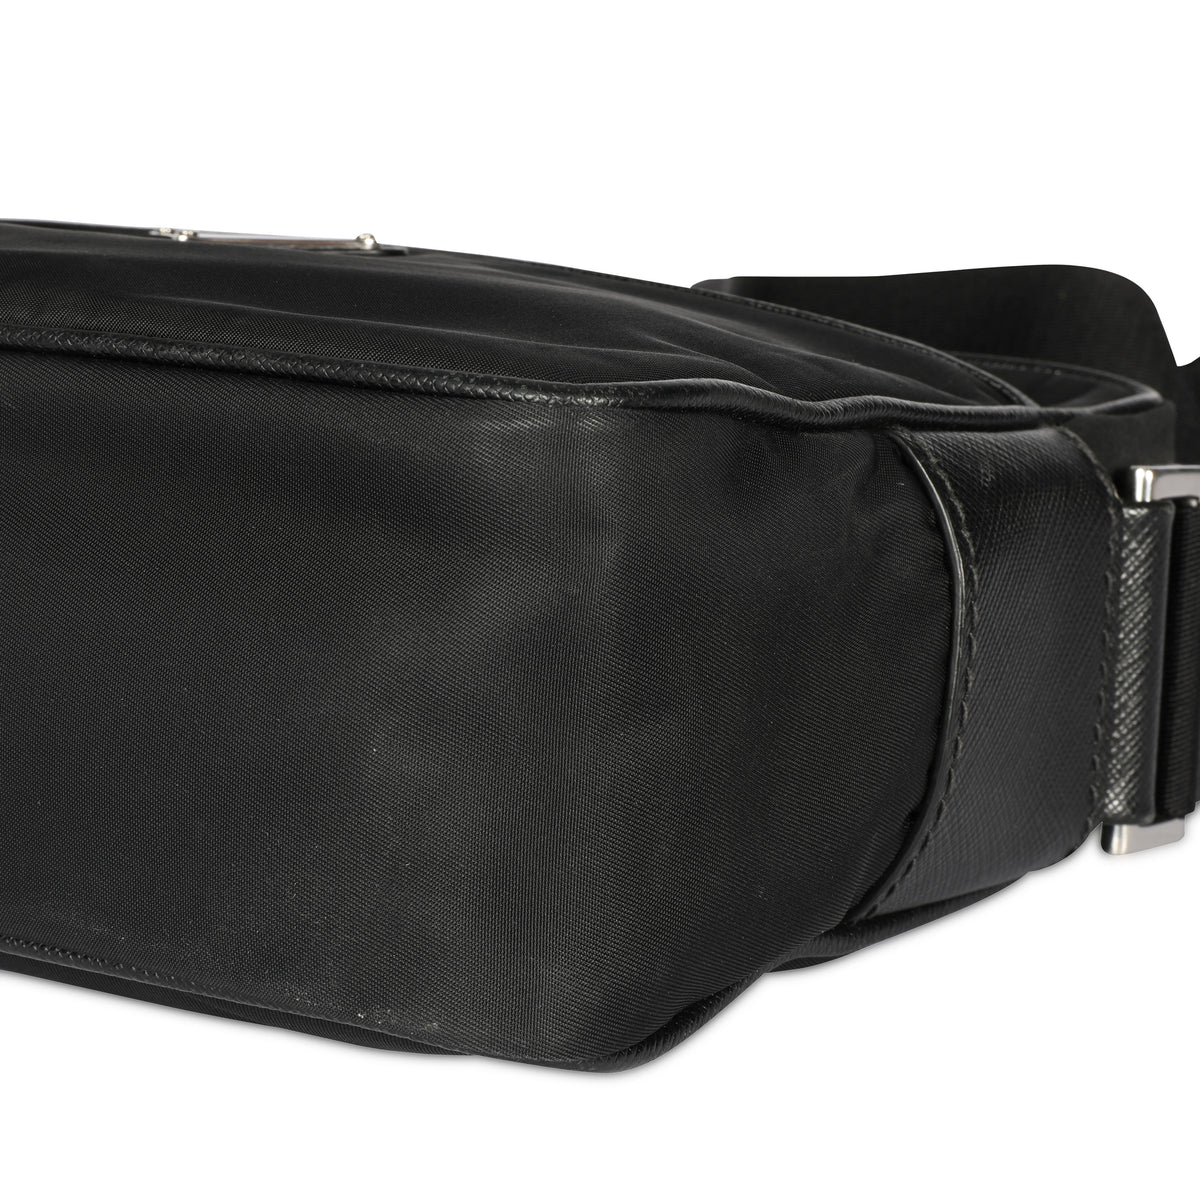 Louis Vuitton Black Calfskin New Wave Camera Bag, myGemma, QA